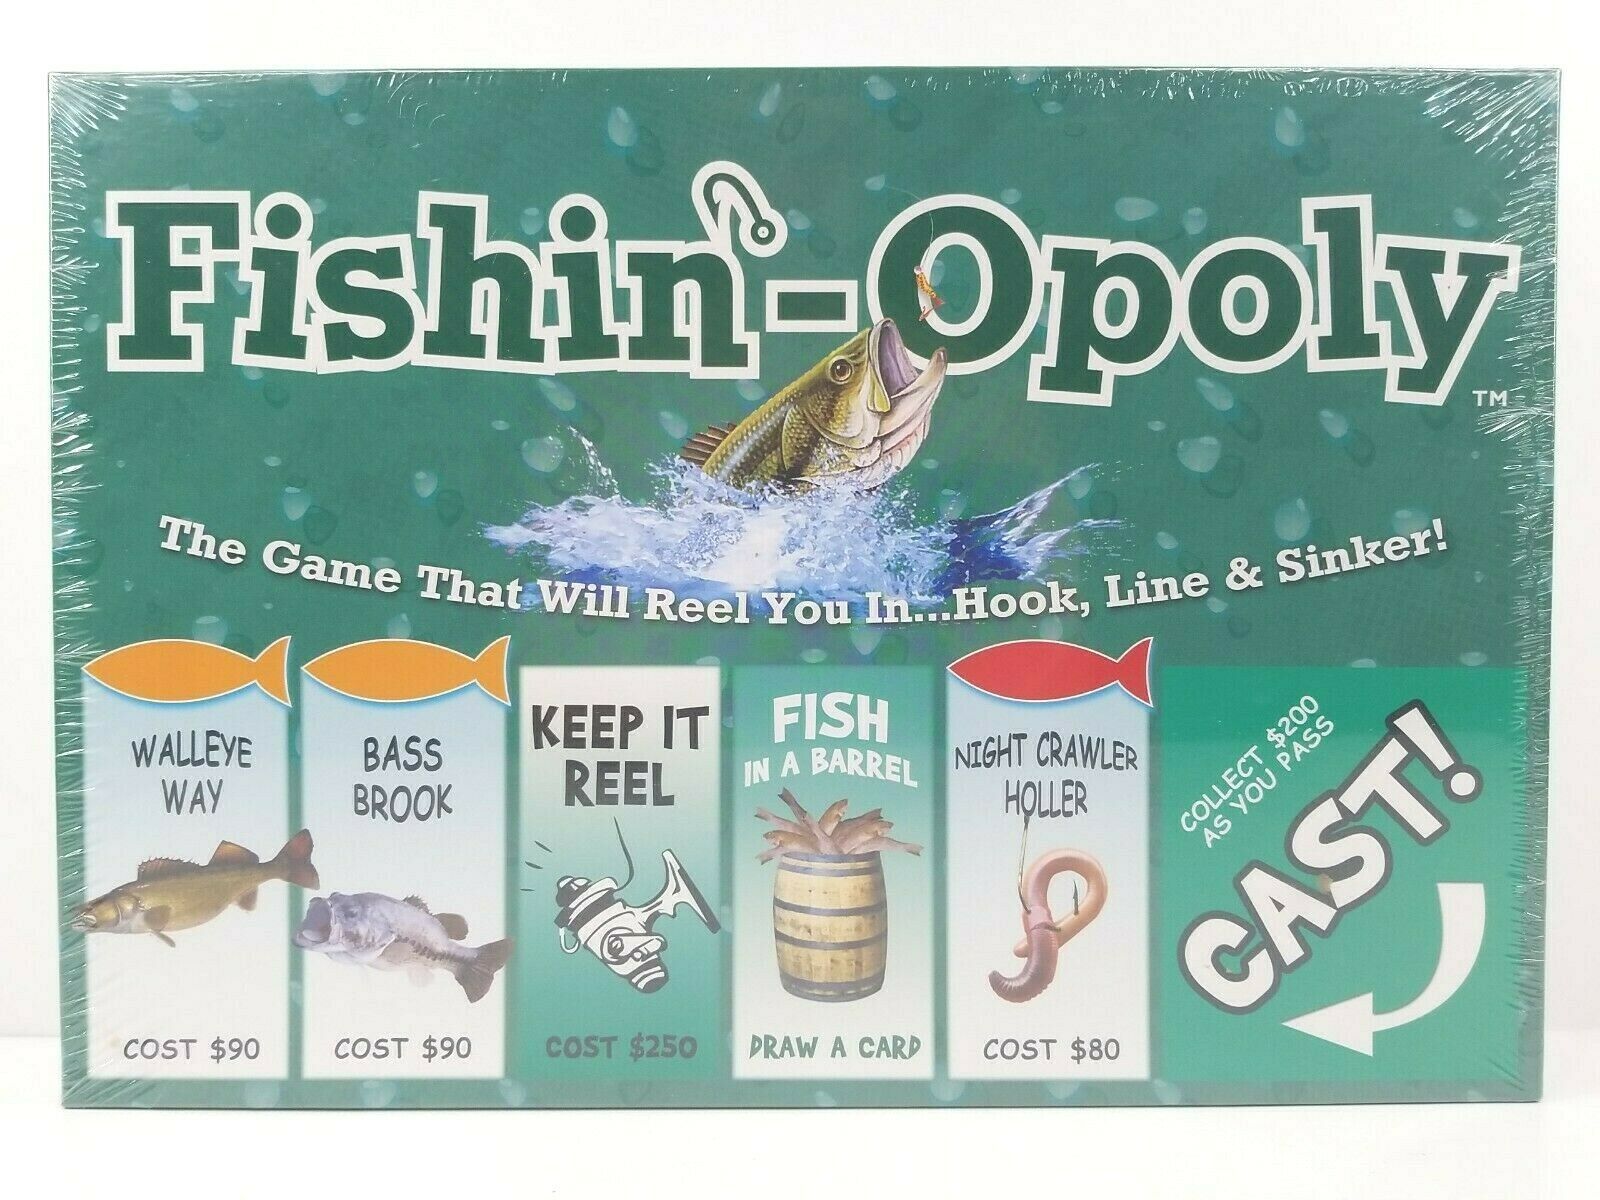 Fishin-Opoly Board Game